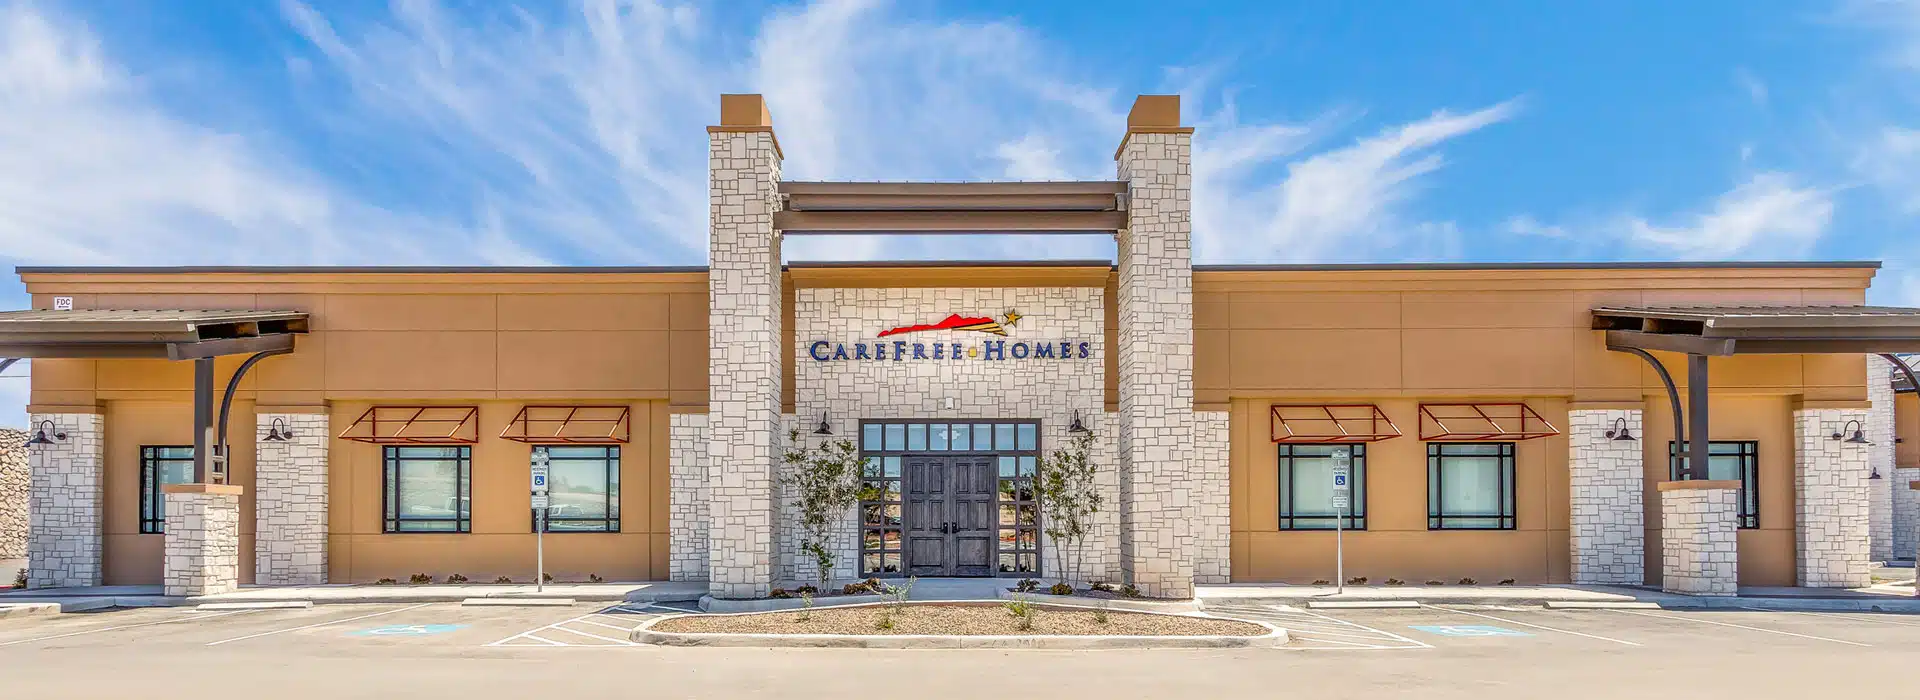 CareFree Homes El Paso Design Studio